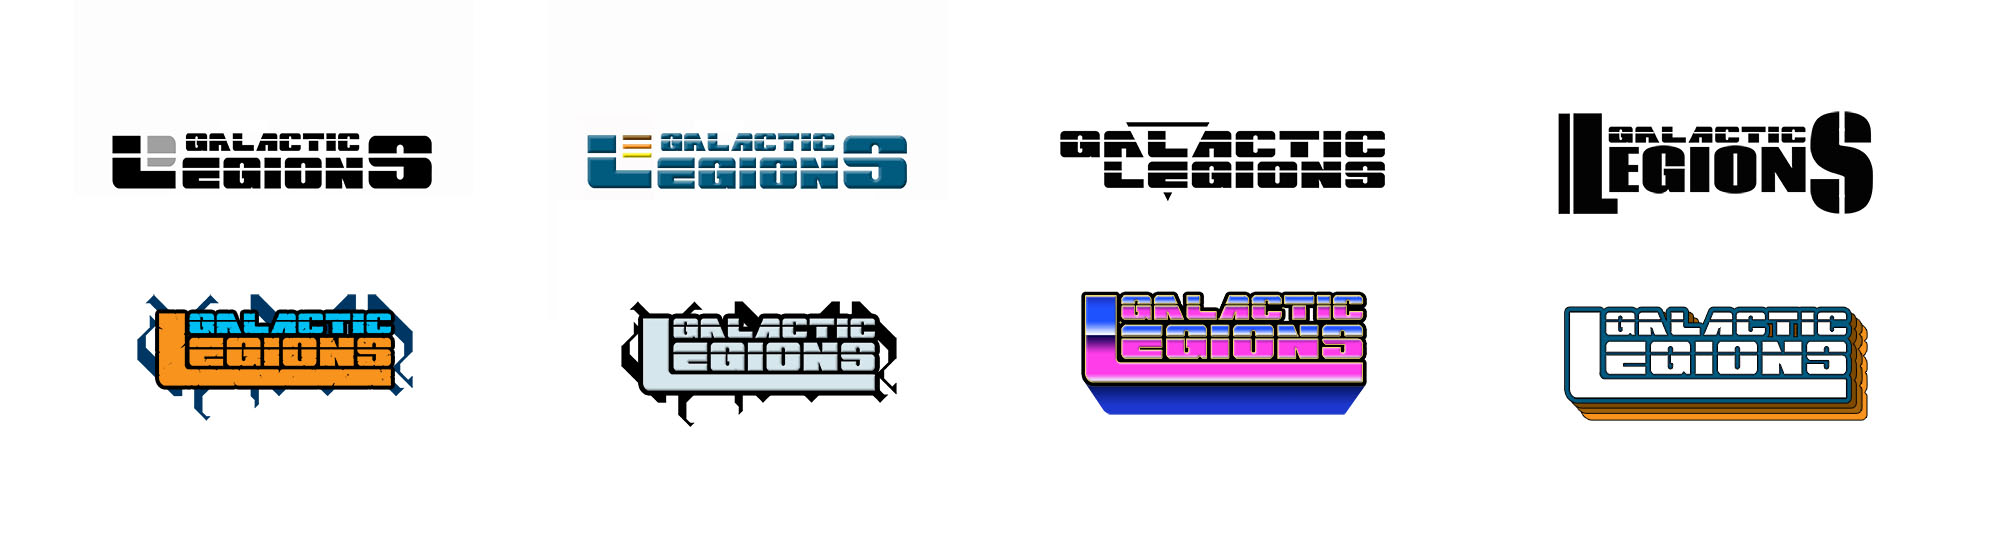 Galactic Legions logos